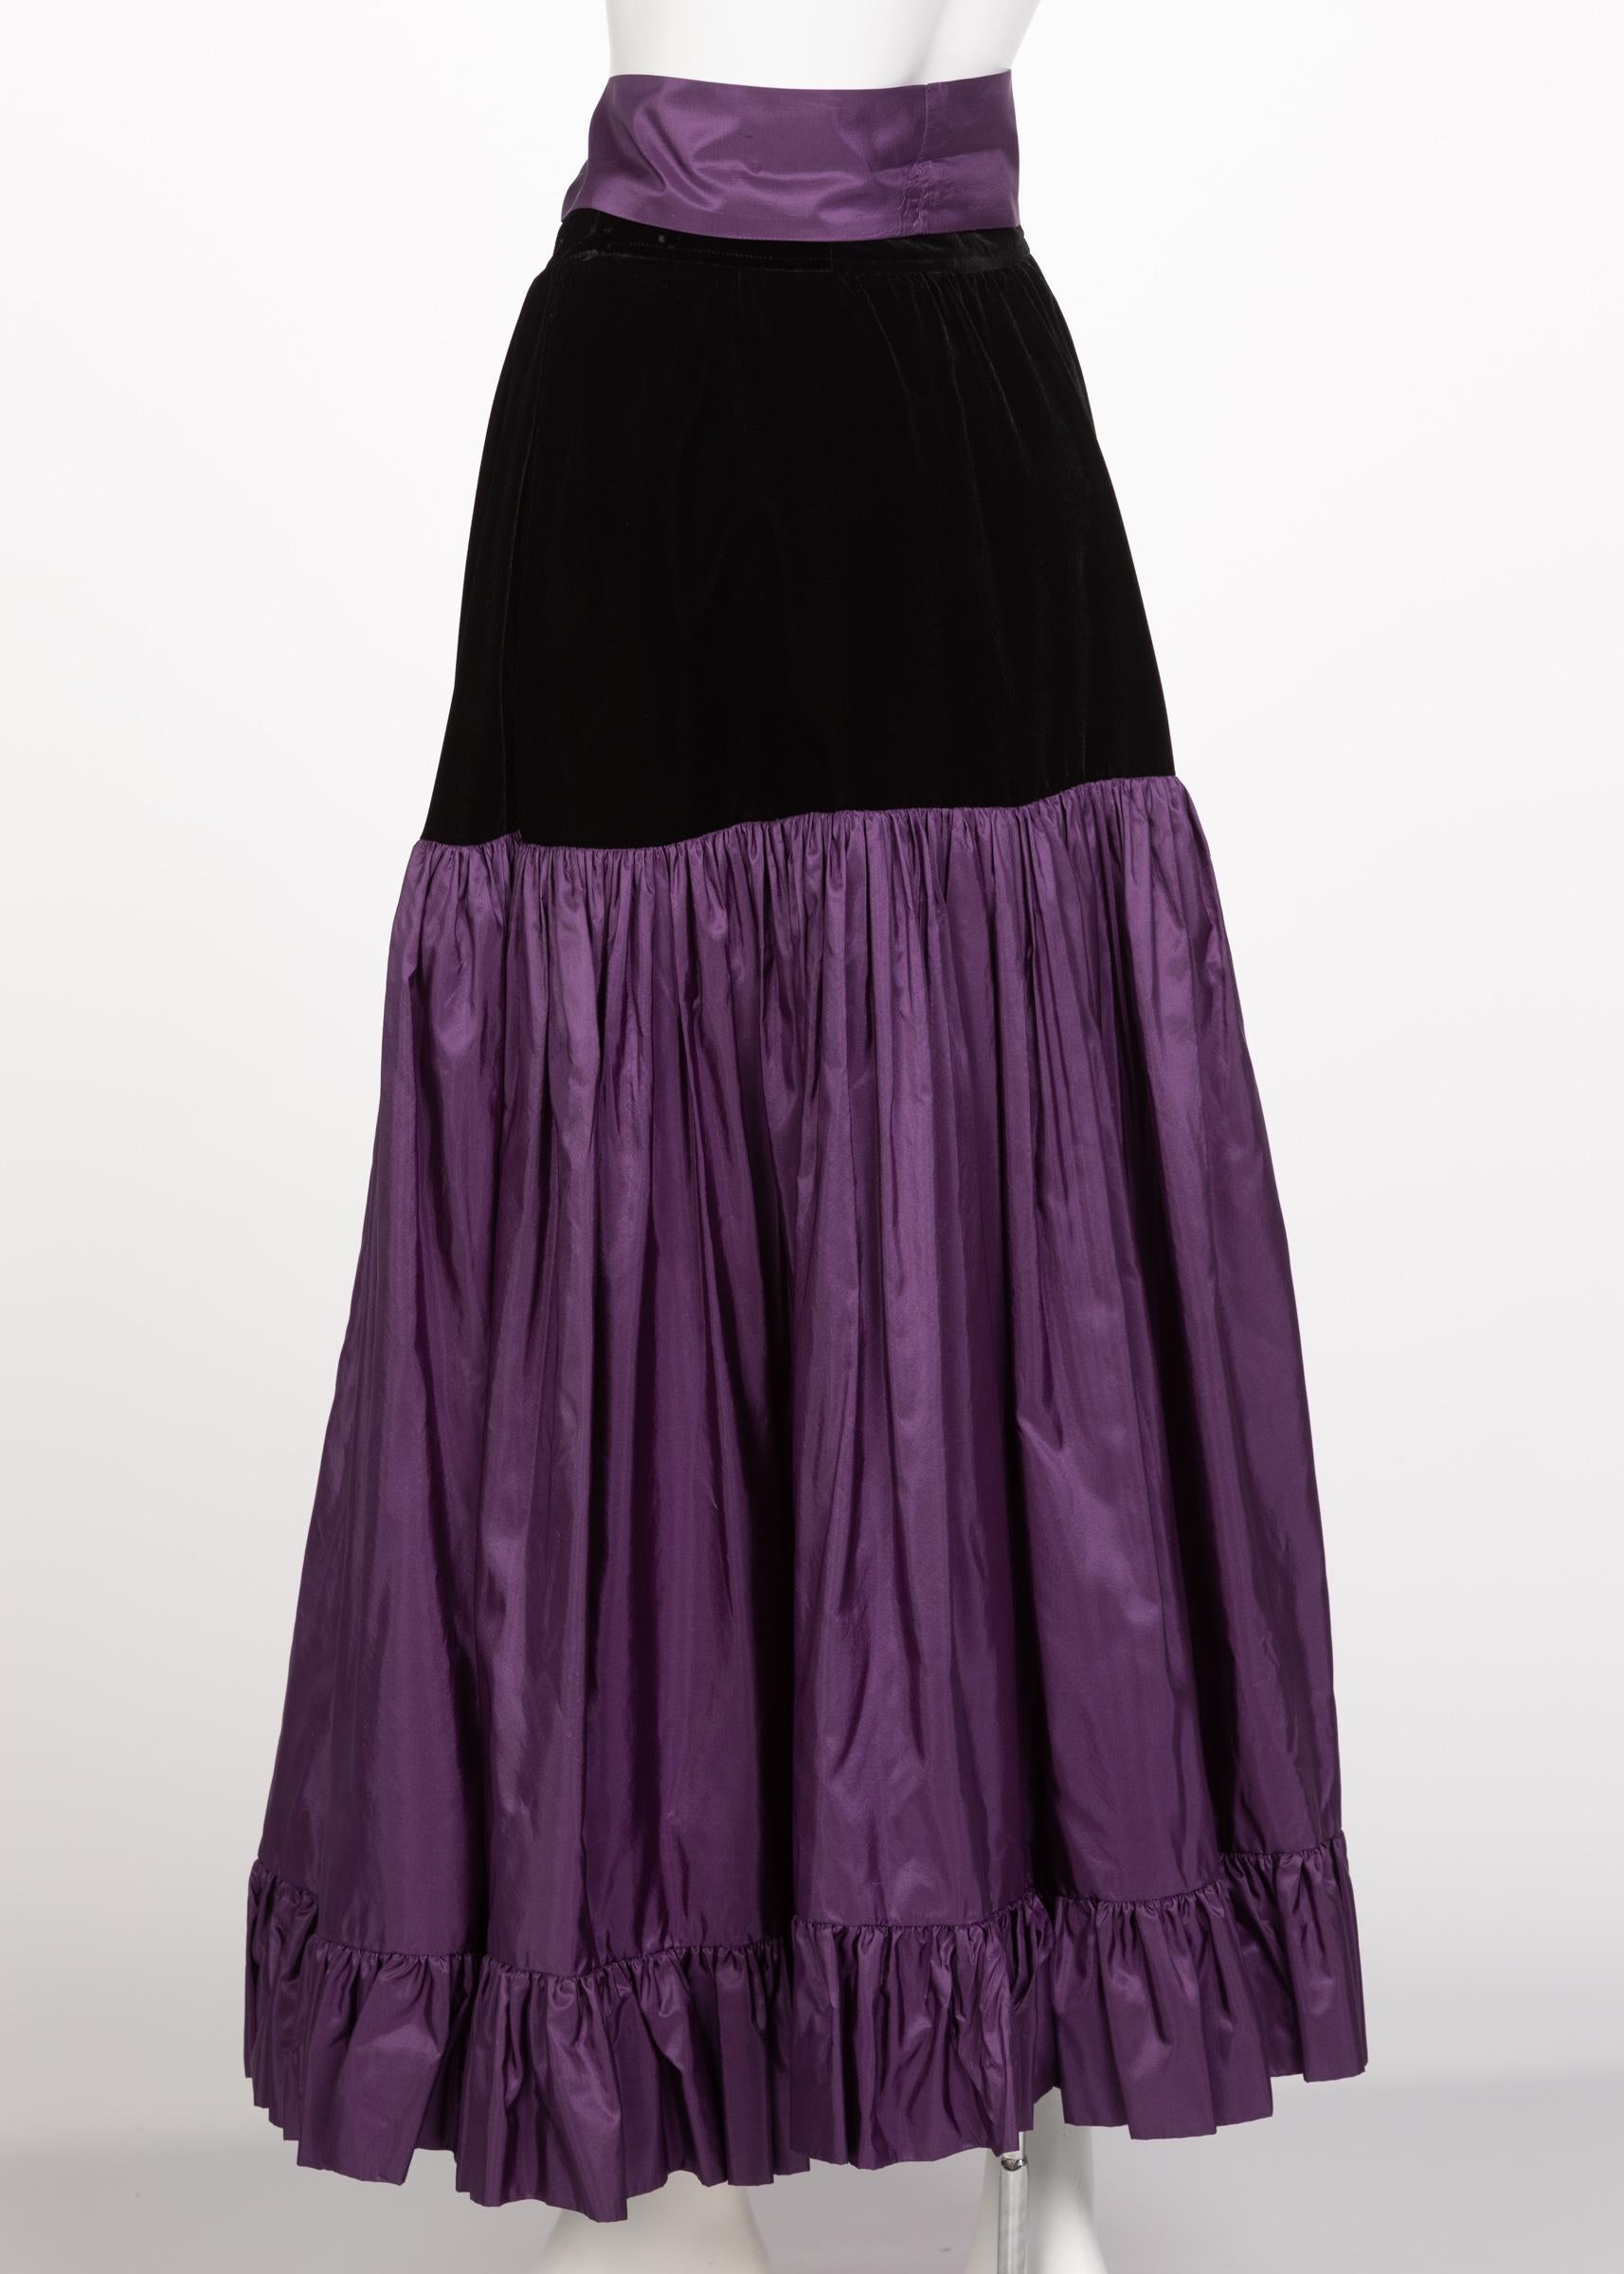 Women's or Men's Yves Saint Laurent Skirt Russian Collection Purple Skirt YSL, 1970s